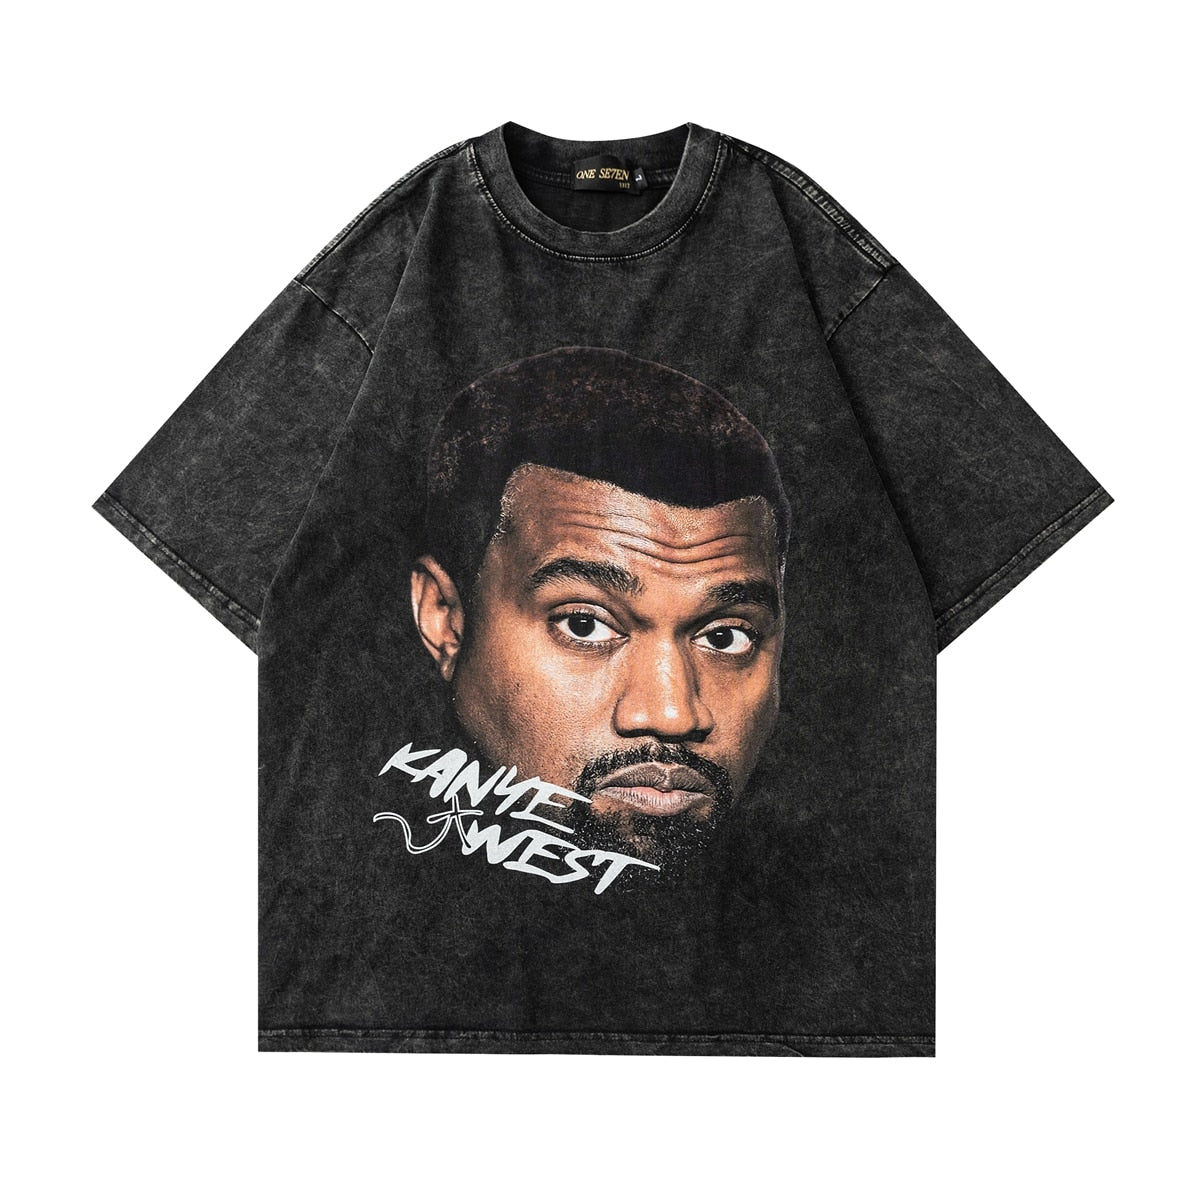 Kanye West T-Shirt